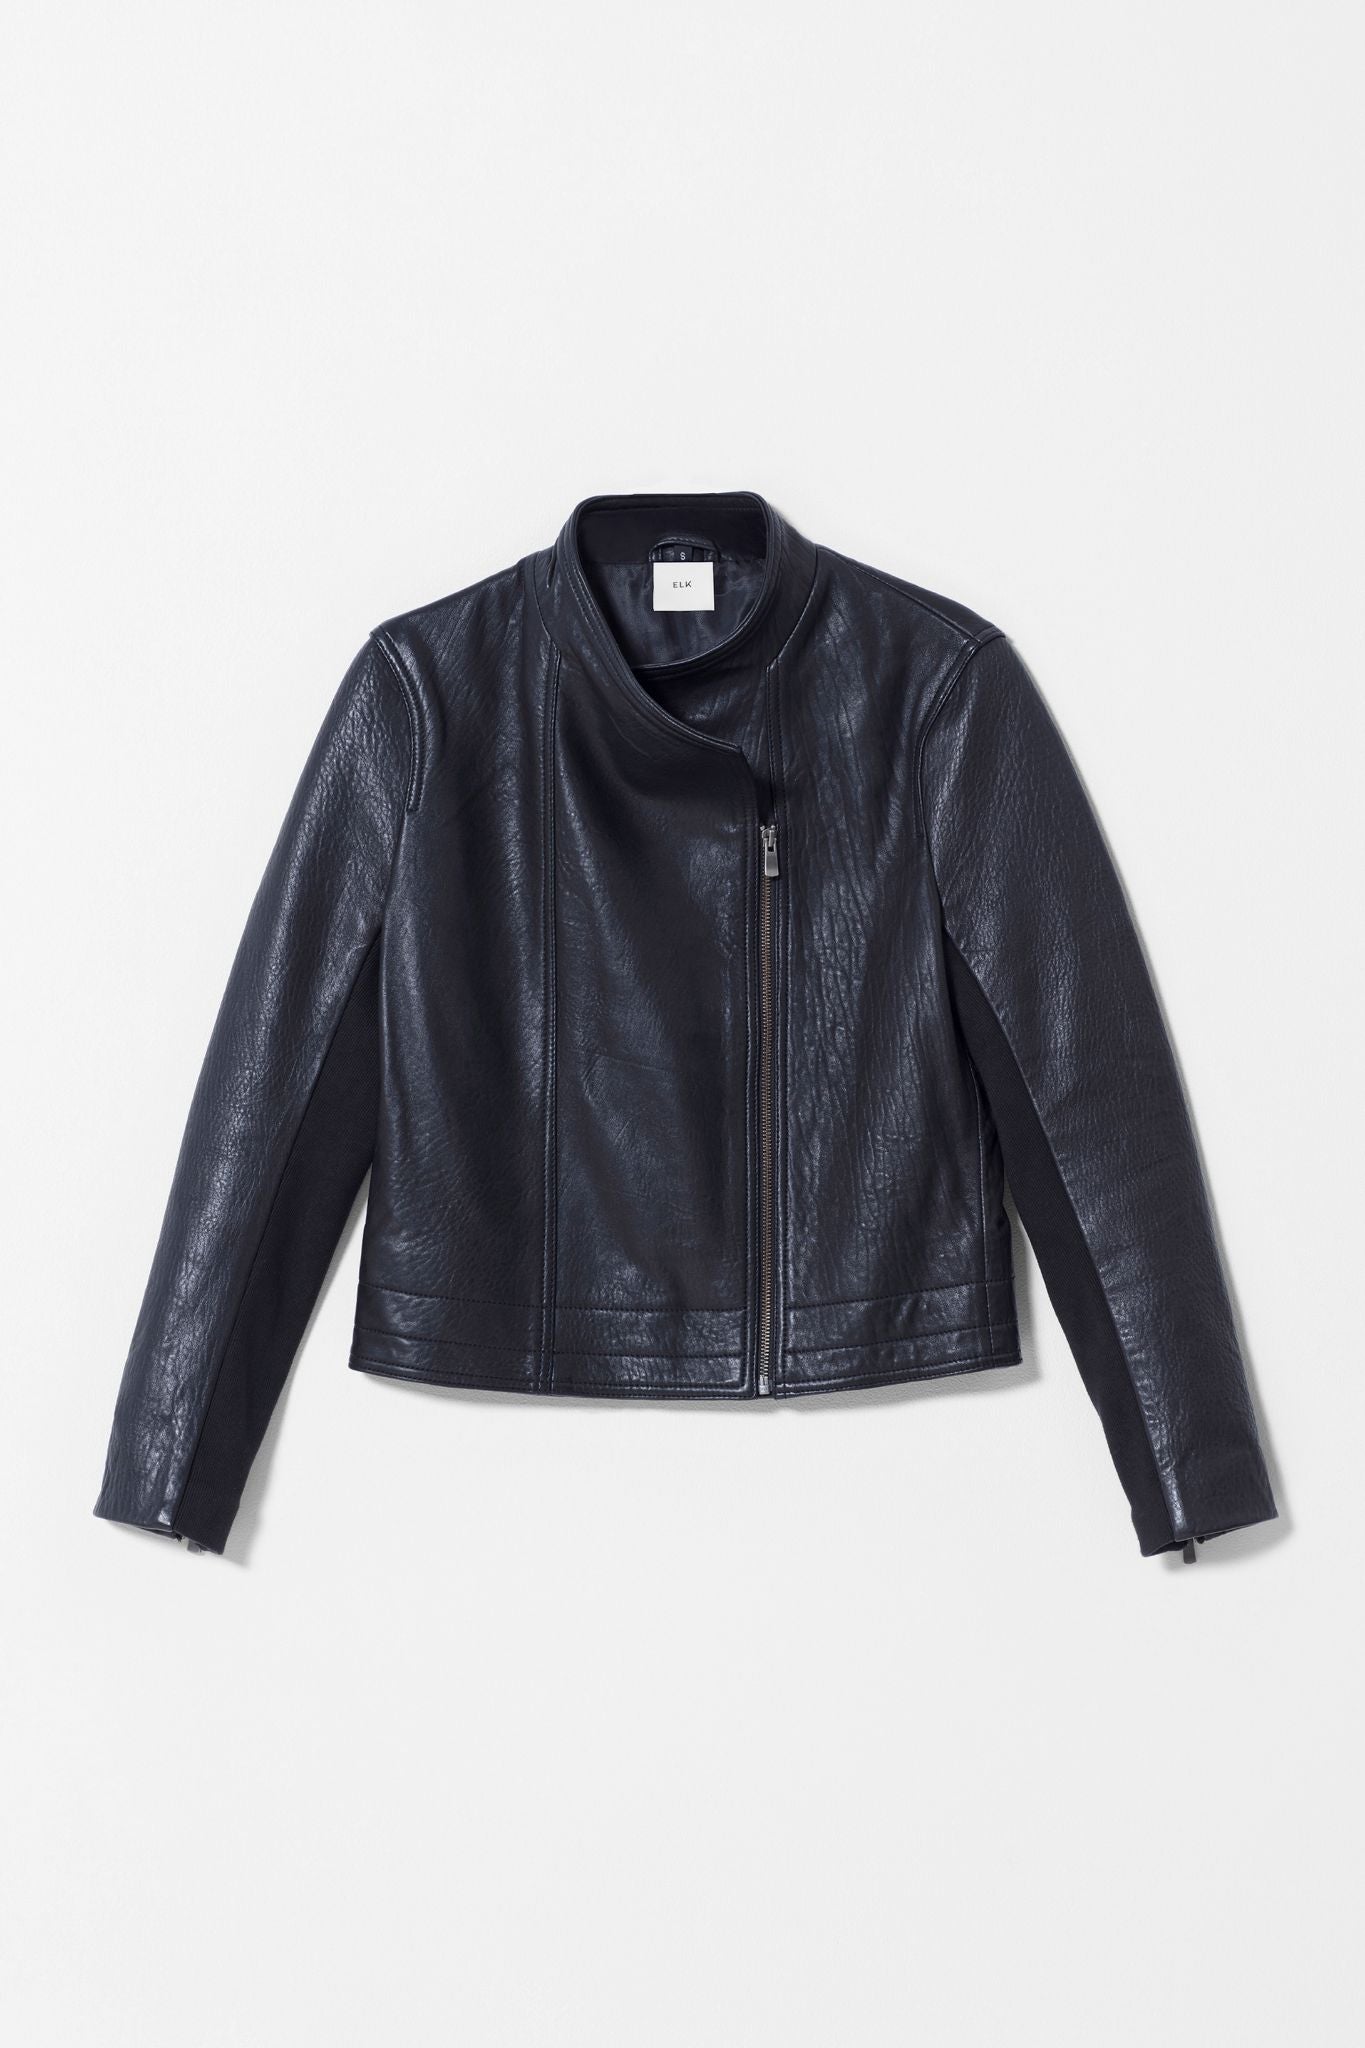 Lader Biker Leather Jacket Front Zipped Up | Black